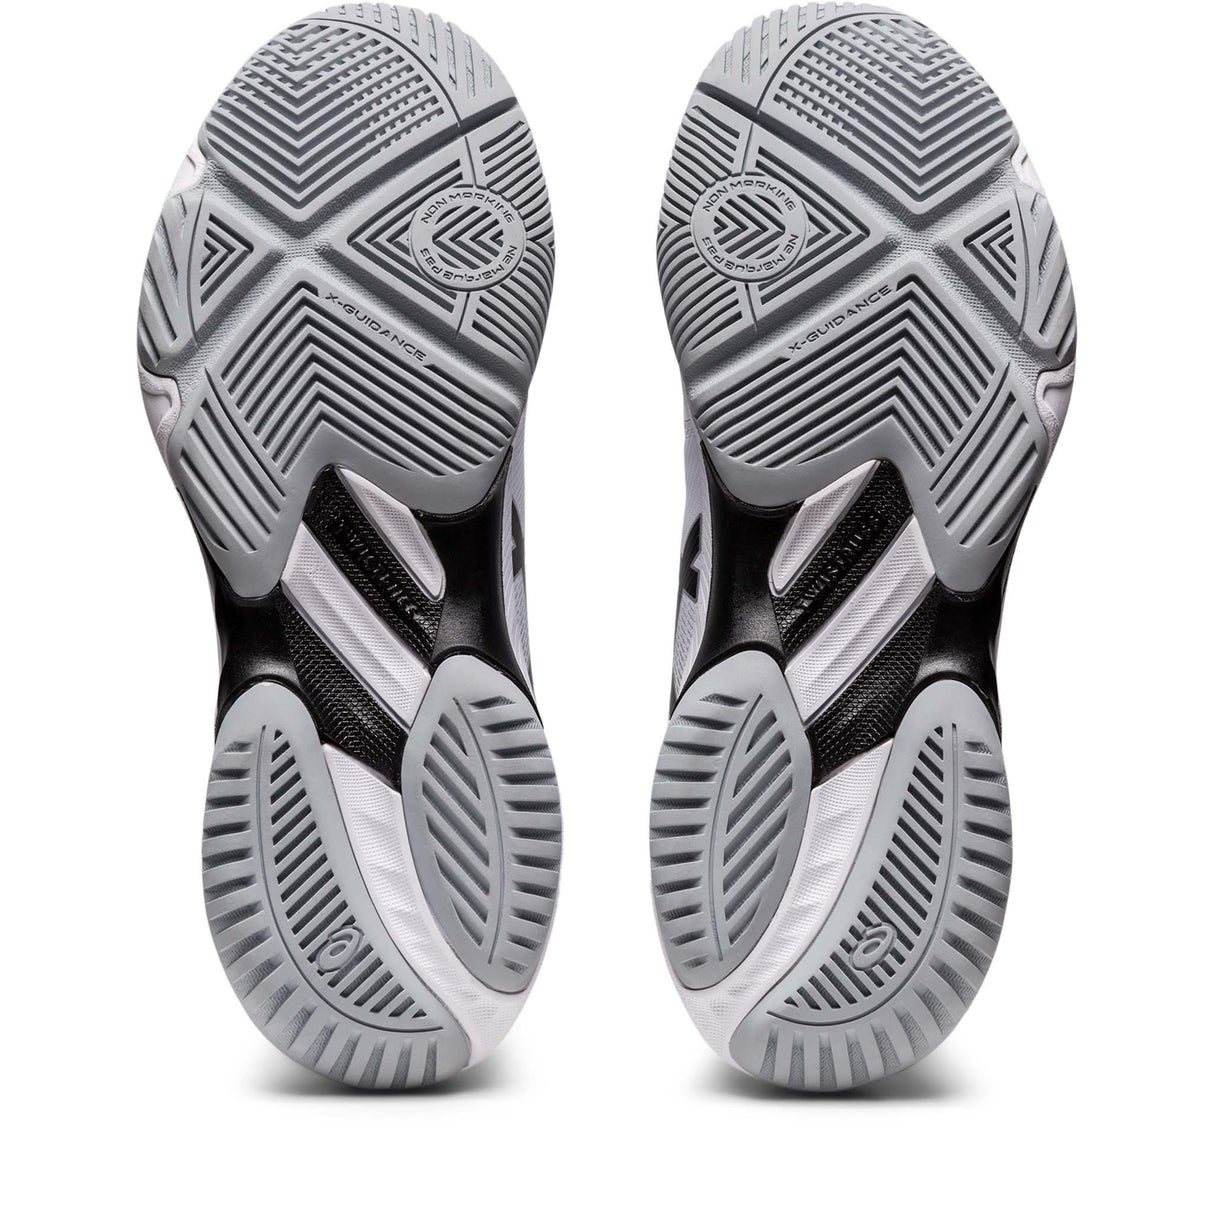 ASICS Netburner Ballistic FF MT 3 chaussures de volley-ball femme blanc noir semelle